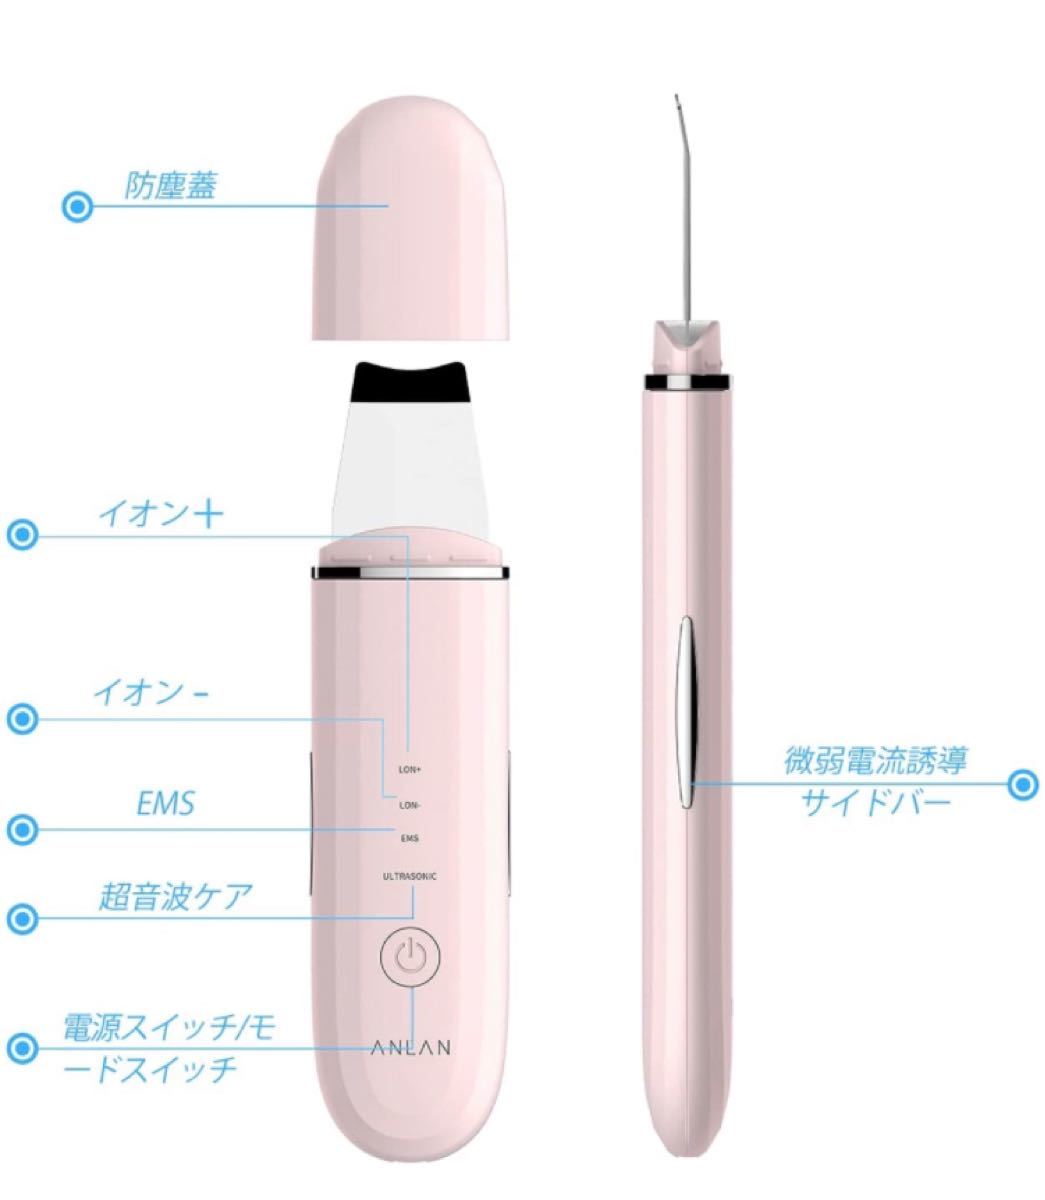 ウォーターピーリング 超音波 美顔器 超音波ピーリング 超音波振動 USB充電式 Type-C充電式 日本語説明書付き ピンク